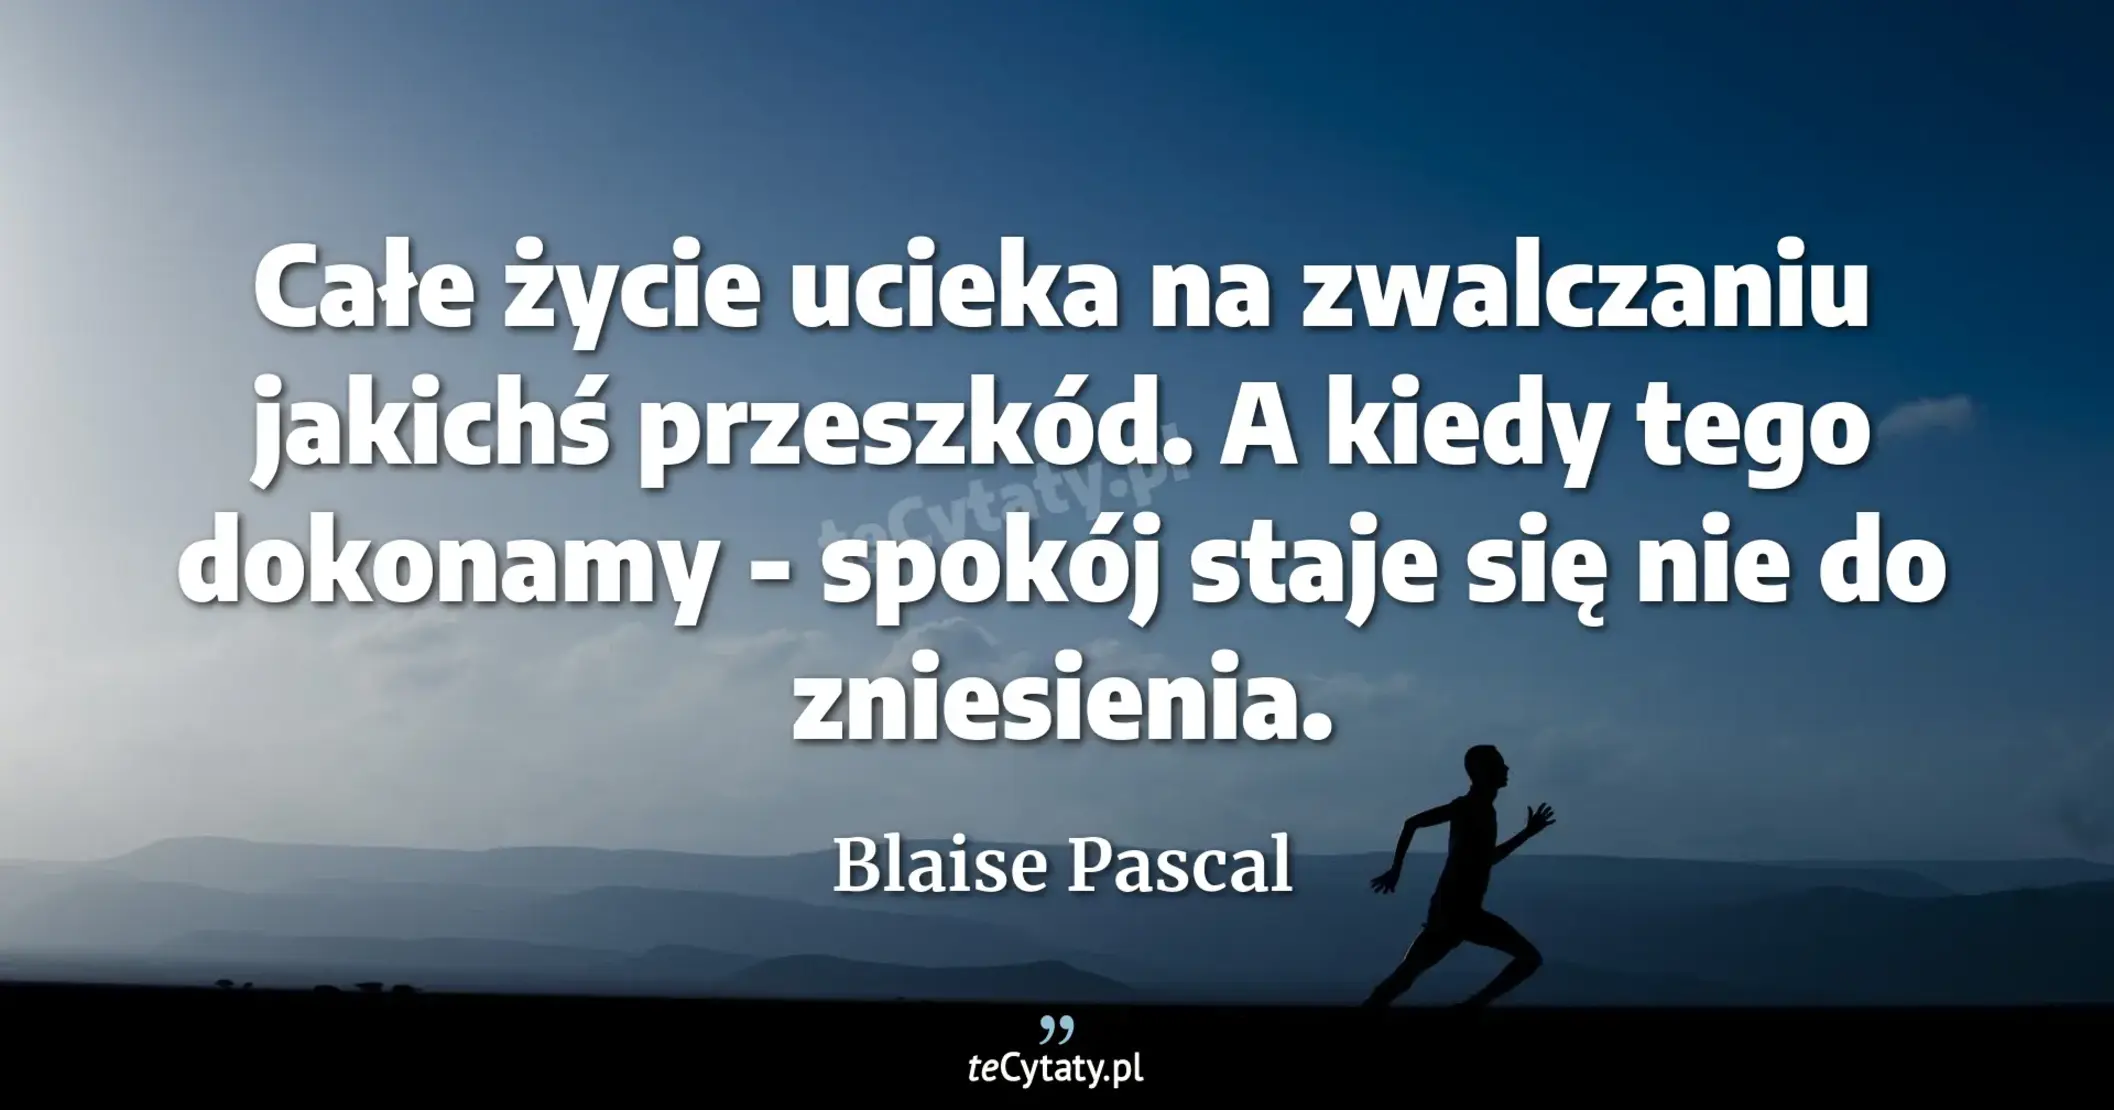 Całe życie ucieka na zwalczaniu jakichś przeszkód. A kiedy tego dokonamy - spokój staje się nie do zniesienia. - Blaise Pascal